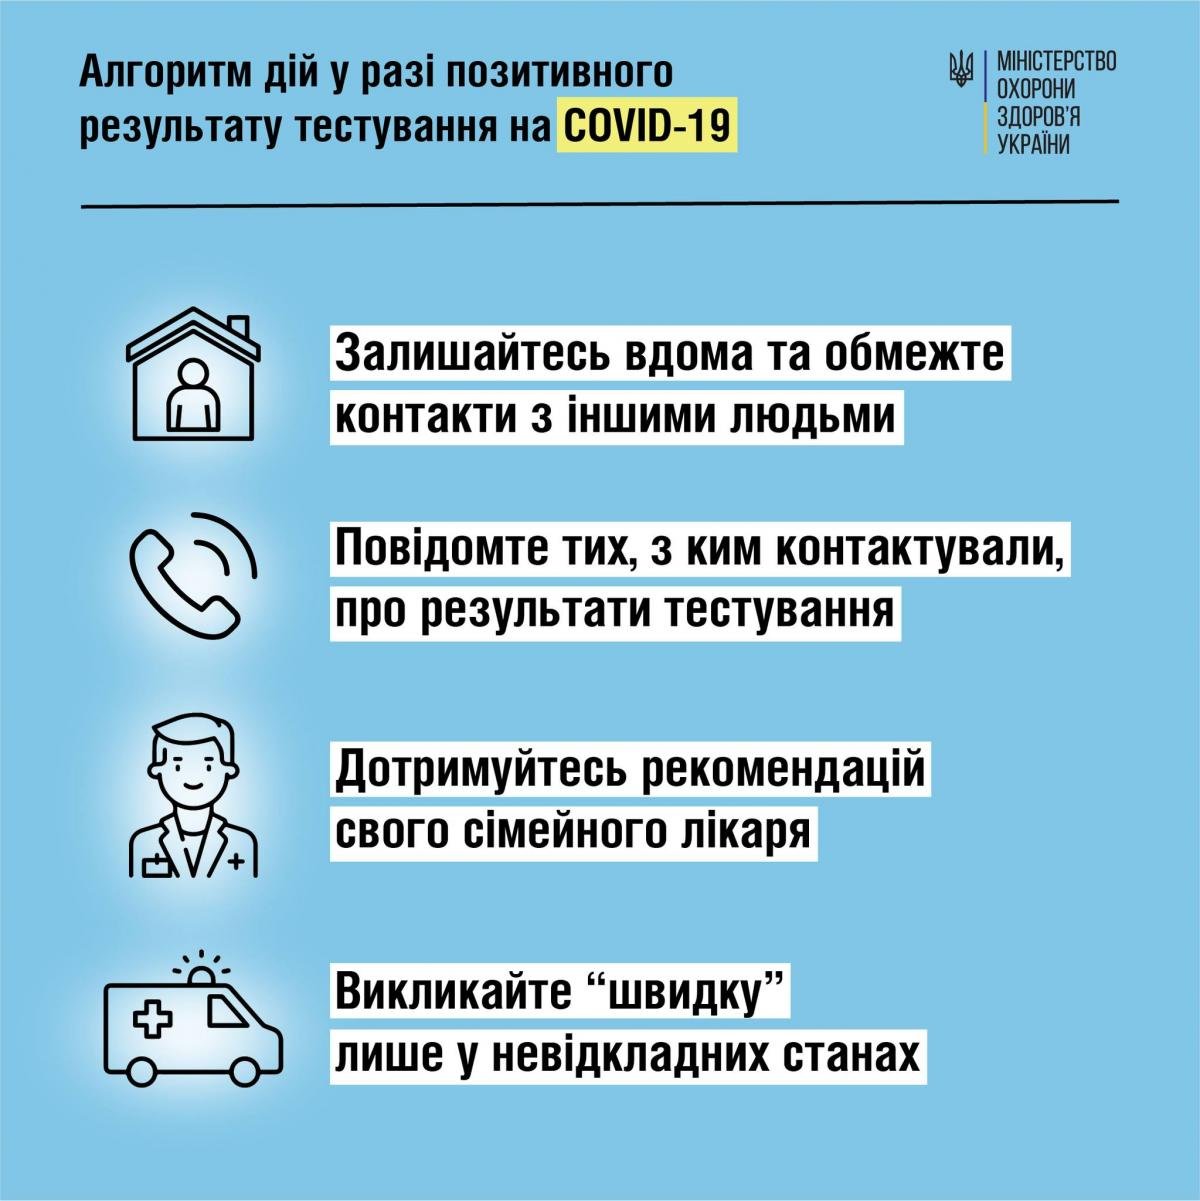 Инфографика facebook.com/moz.ukr